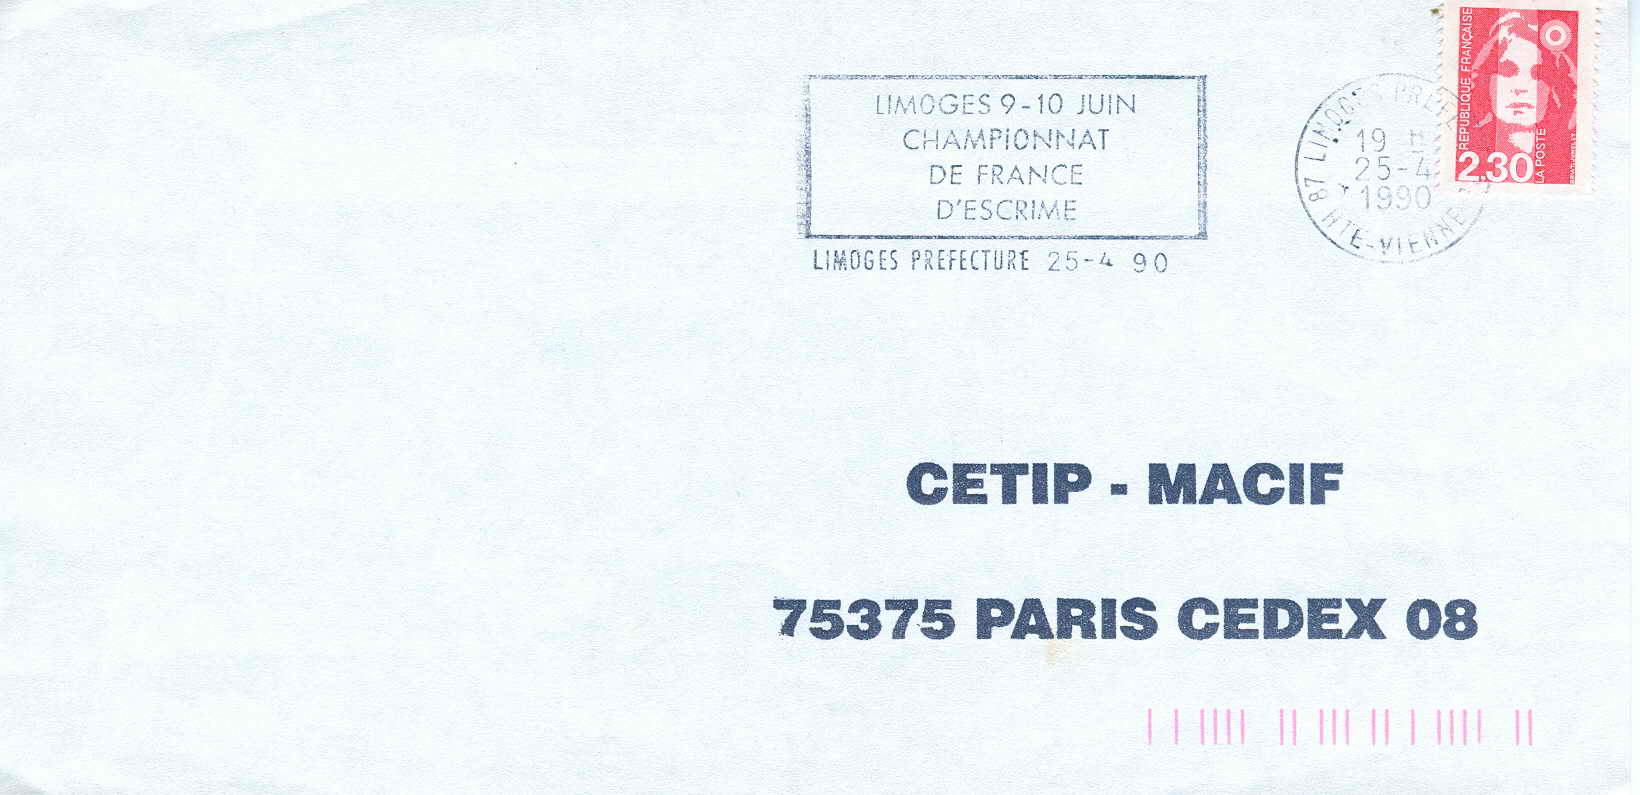 ESCRIME OBLITERATION TEMPORAIRE FRANCE 1990 LIMOGES CHAMPIONNATS DE FRANCE - Fencing